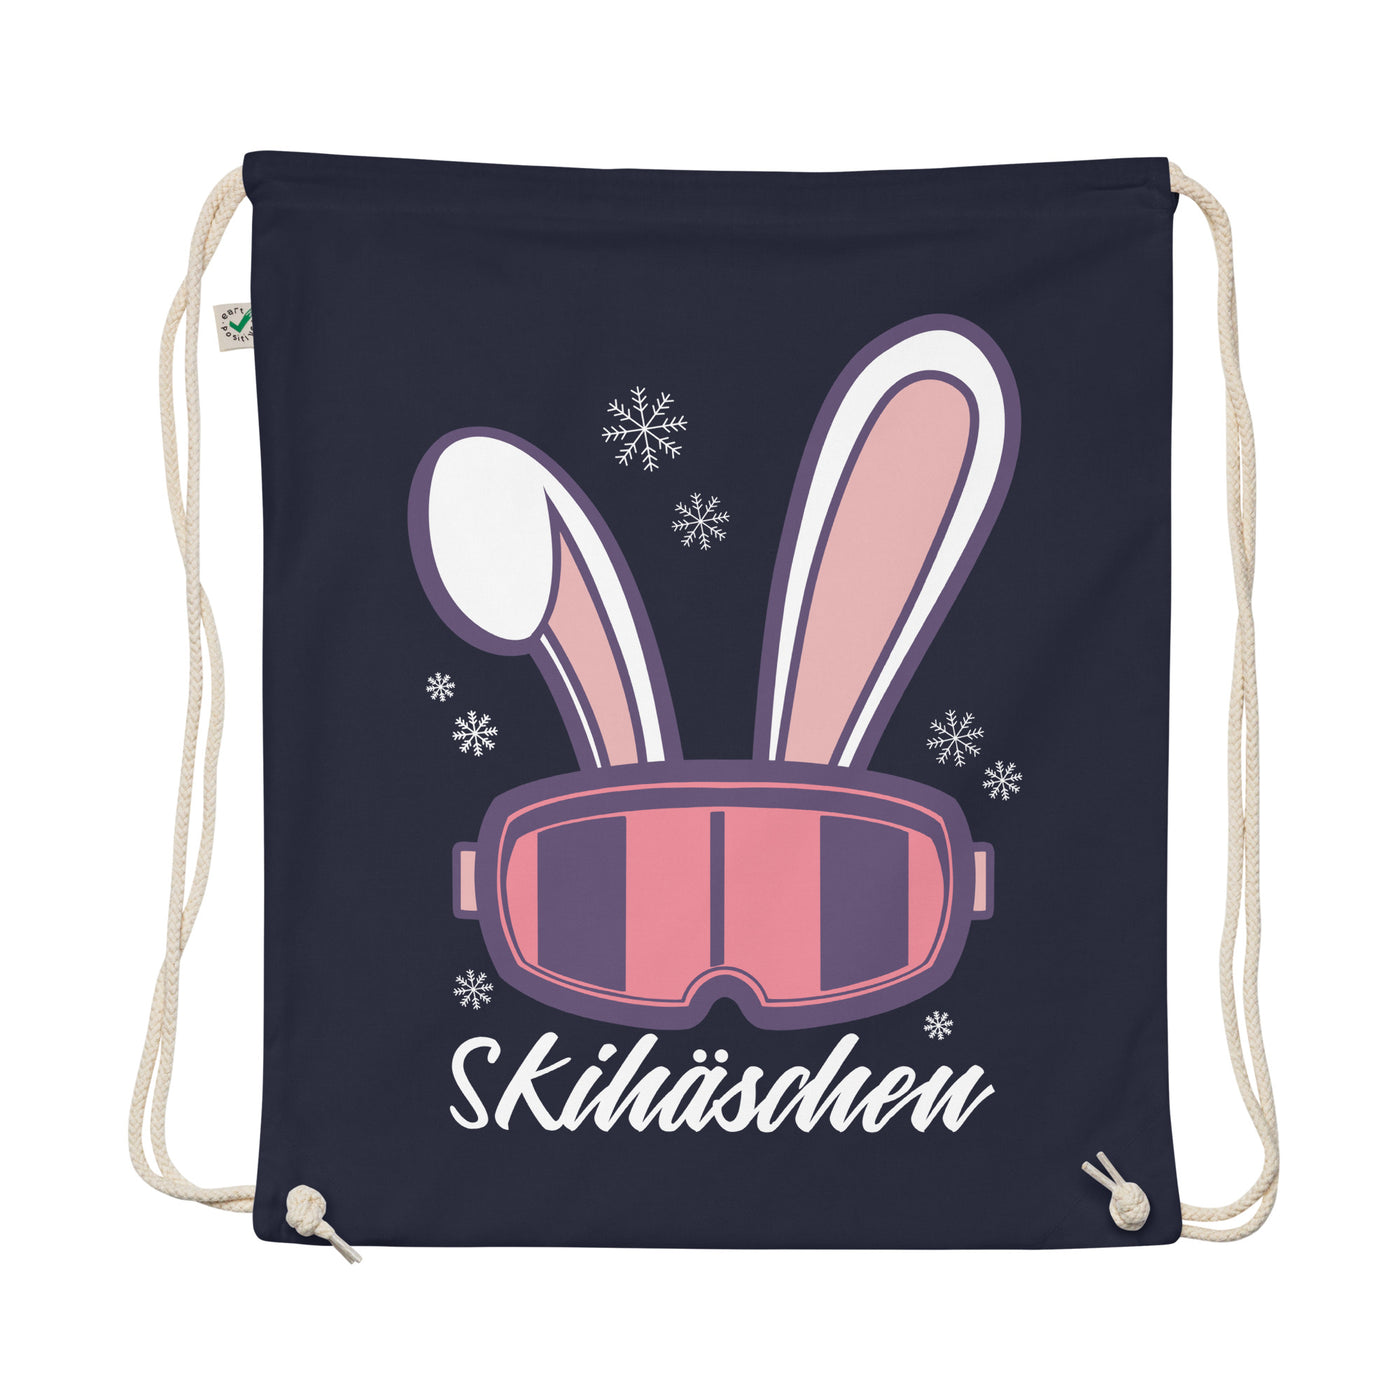 Skihäschen - (S.K) - Organic Turnbeutel klettern